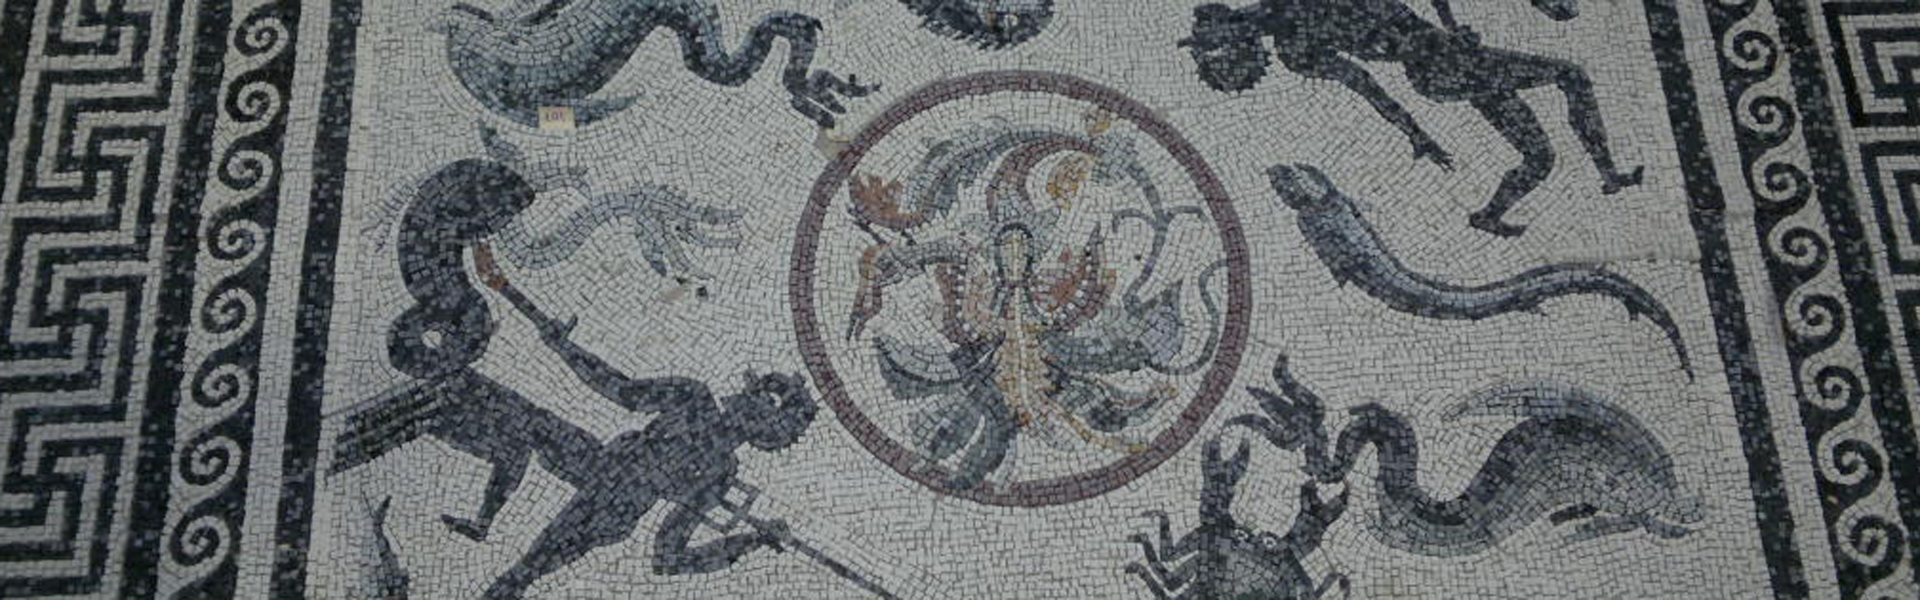 realizzazione pavimenti in mosaici